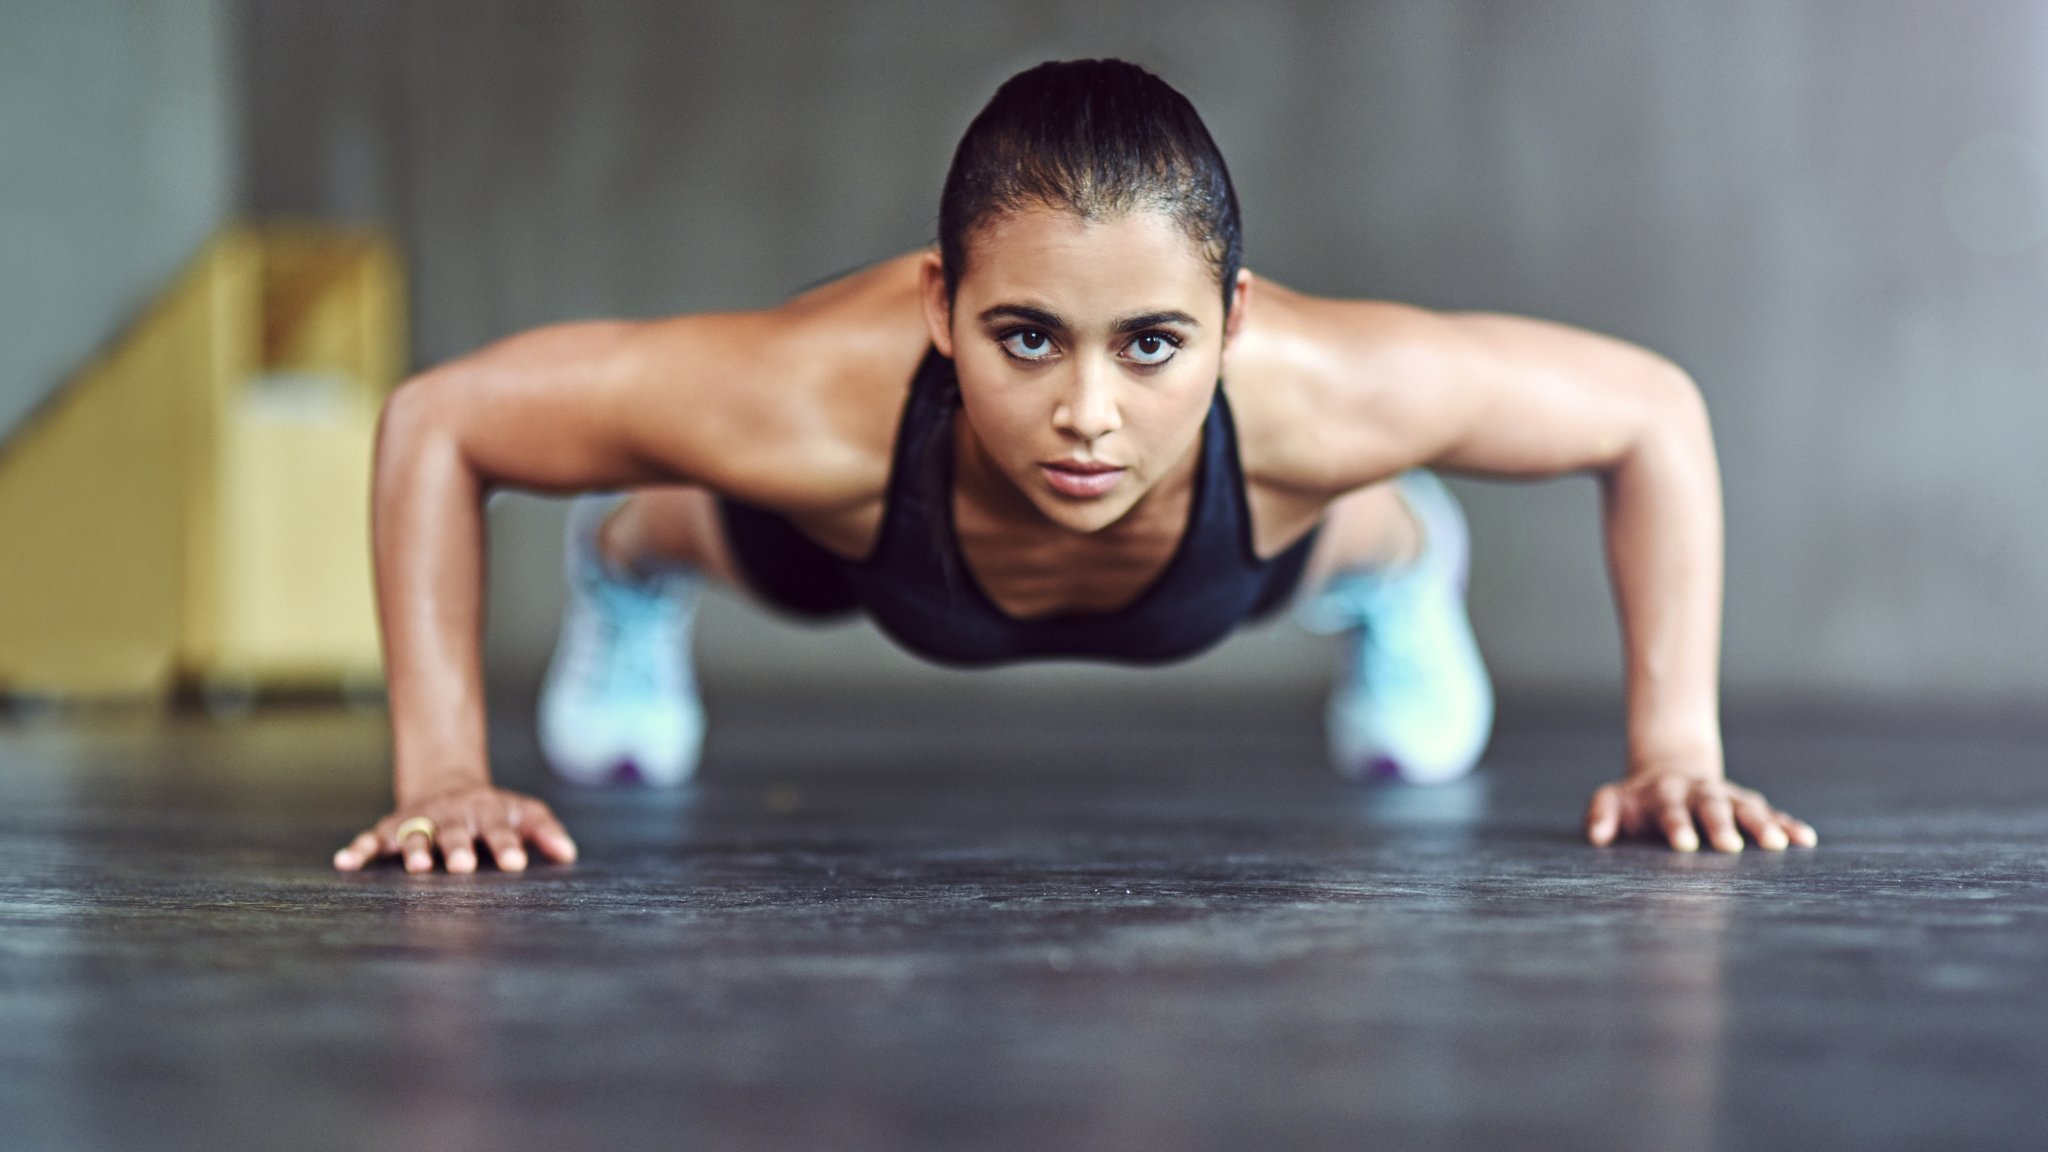 Flexiones o barras, ¿qué ejercicio es el más completo? - BBC News Mundo